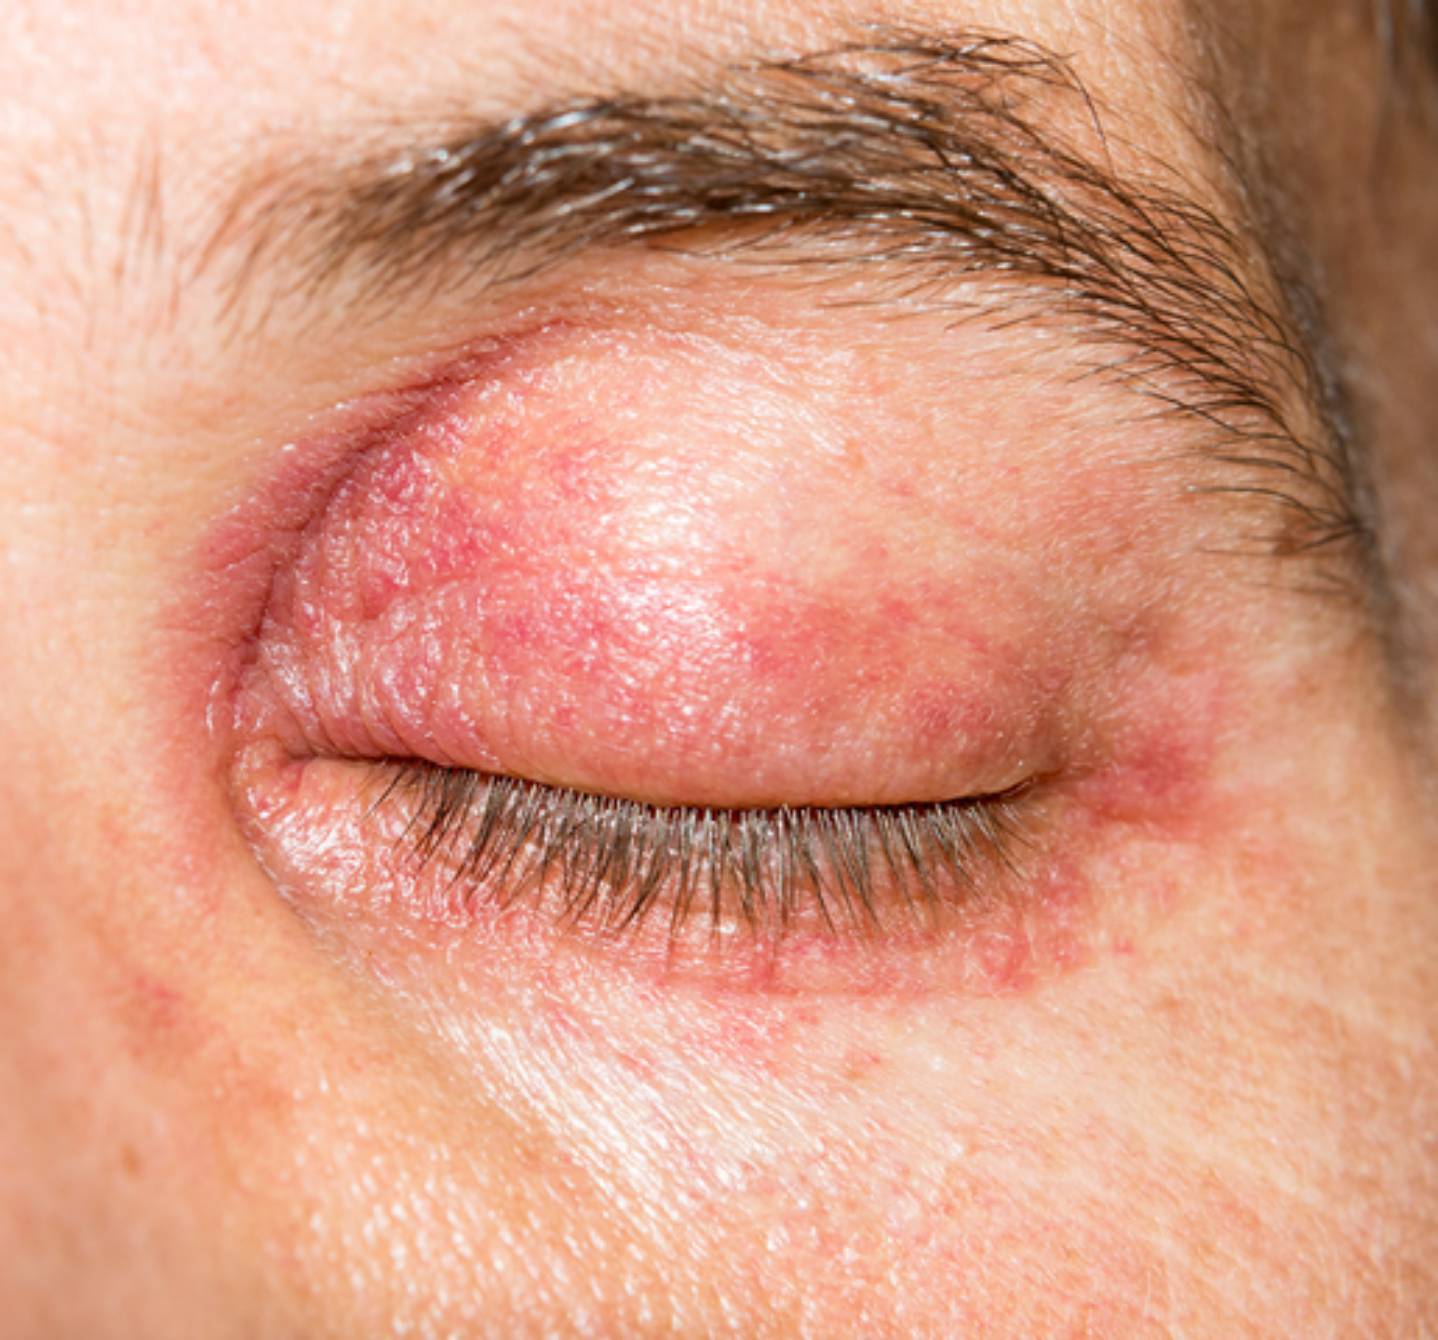 Zatvorené oko s opuchnutým červeným viečkom - príznaky očnej alergie môžu postihnúť aj sliznicu viečka a povrch oka